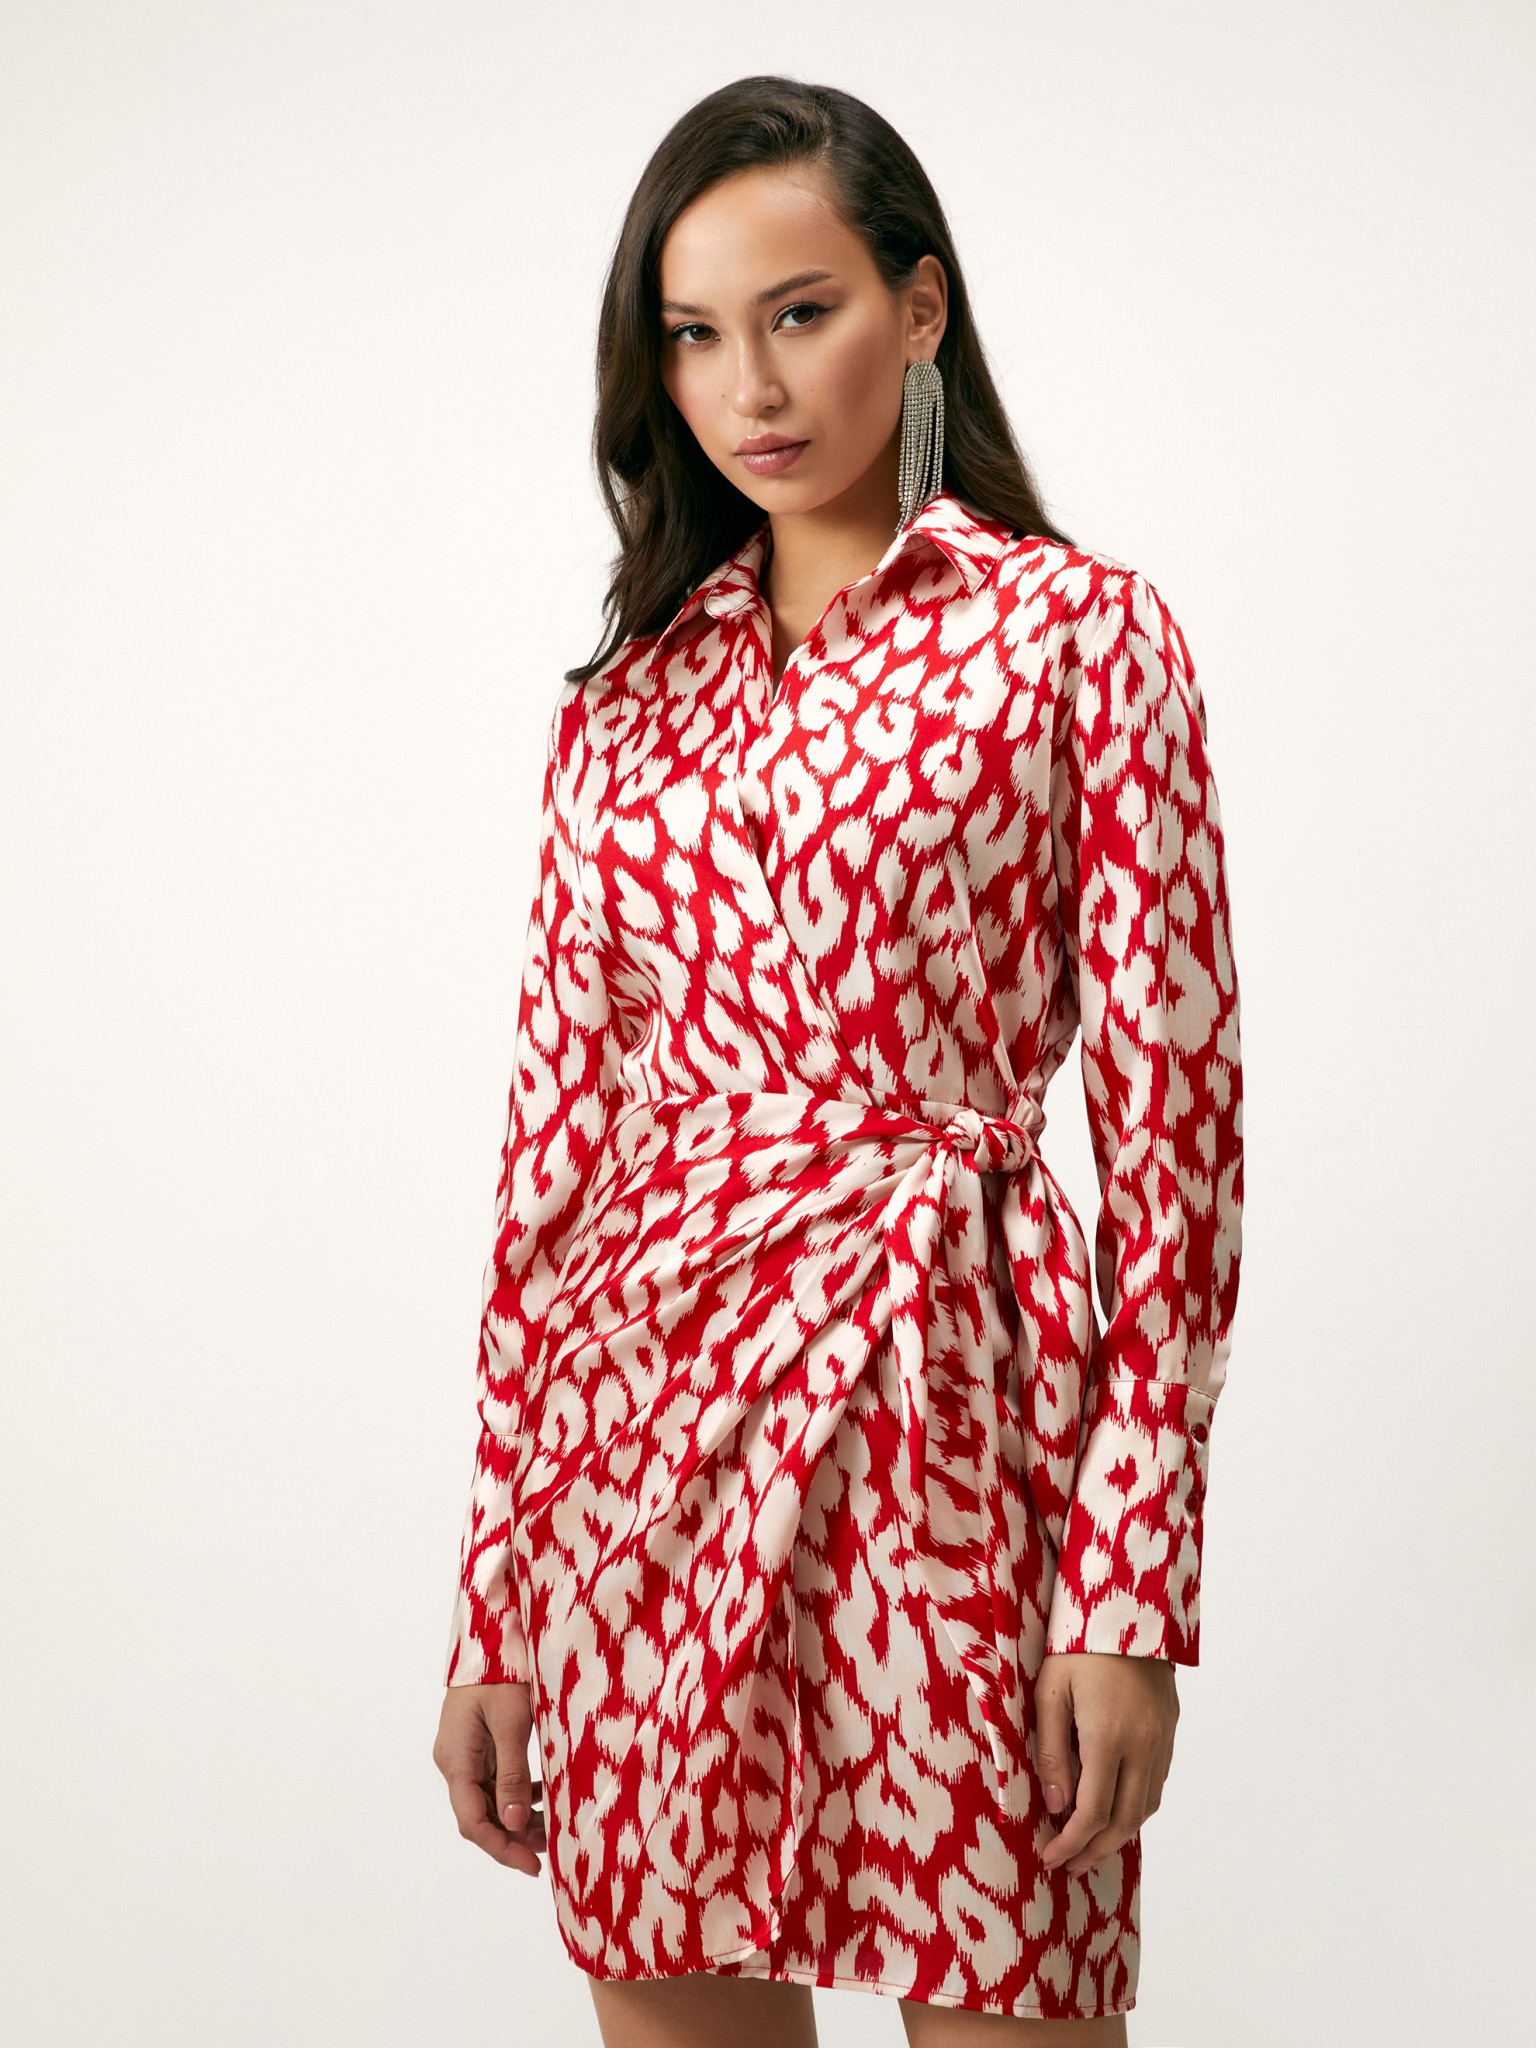 Женское красное платье L от Concept Club, артикул 10200200969.